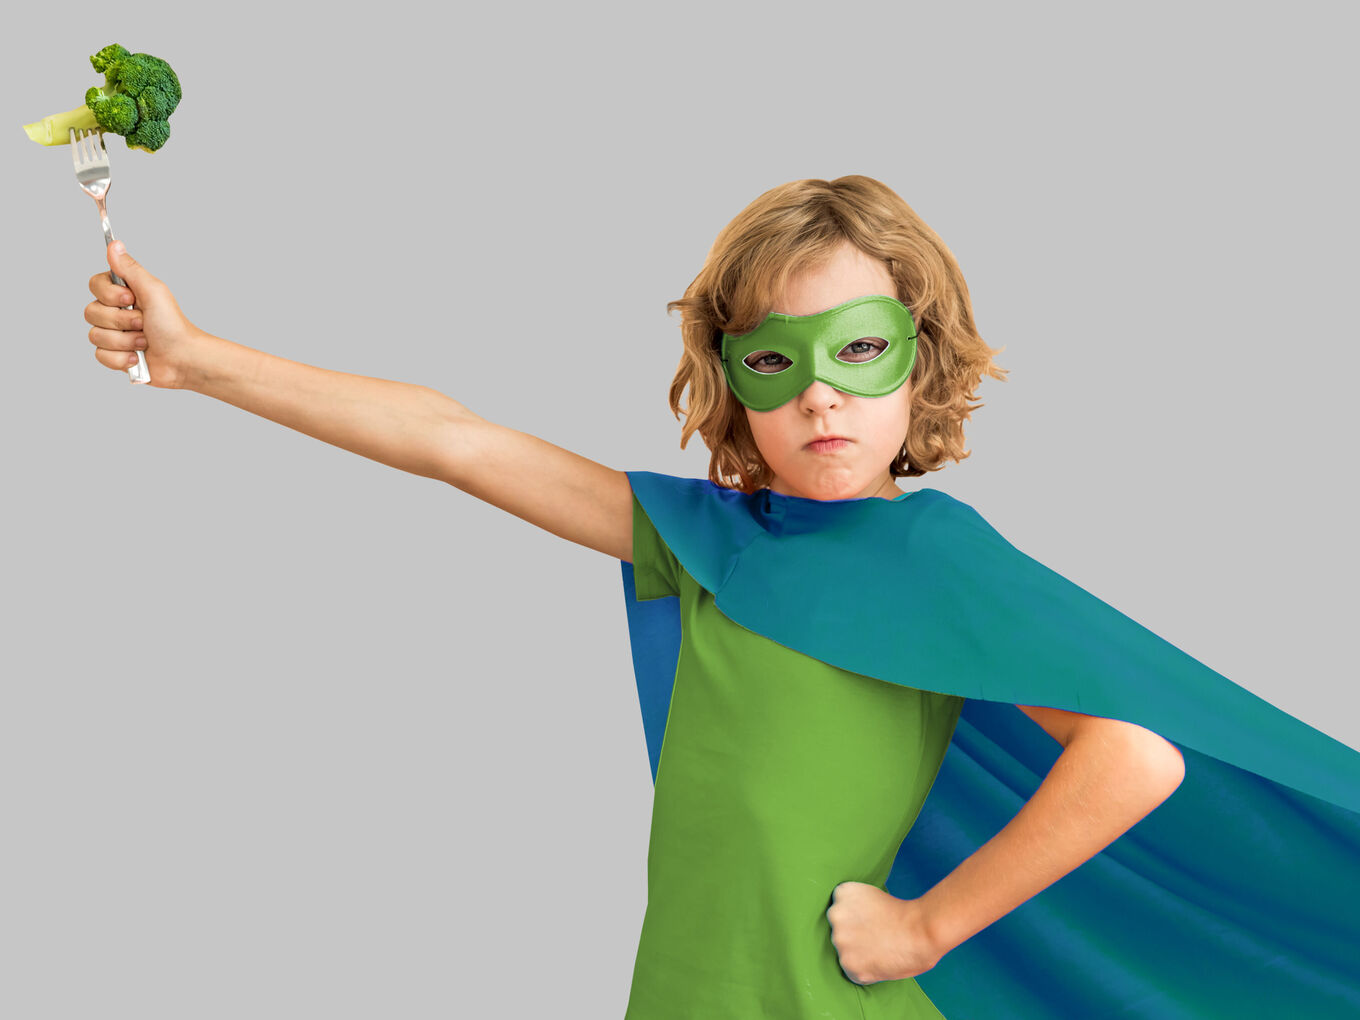 Kind in Superheldenmontur hält Gabel mit Brokkoli in die Luft